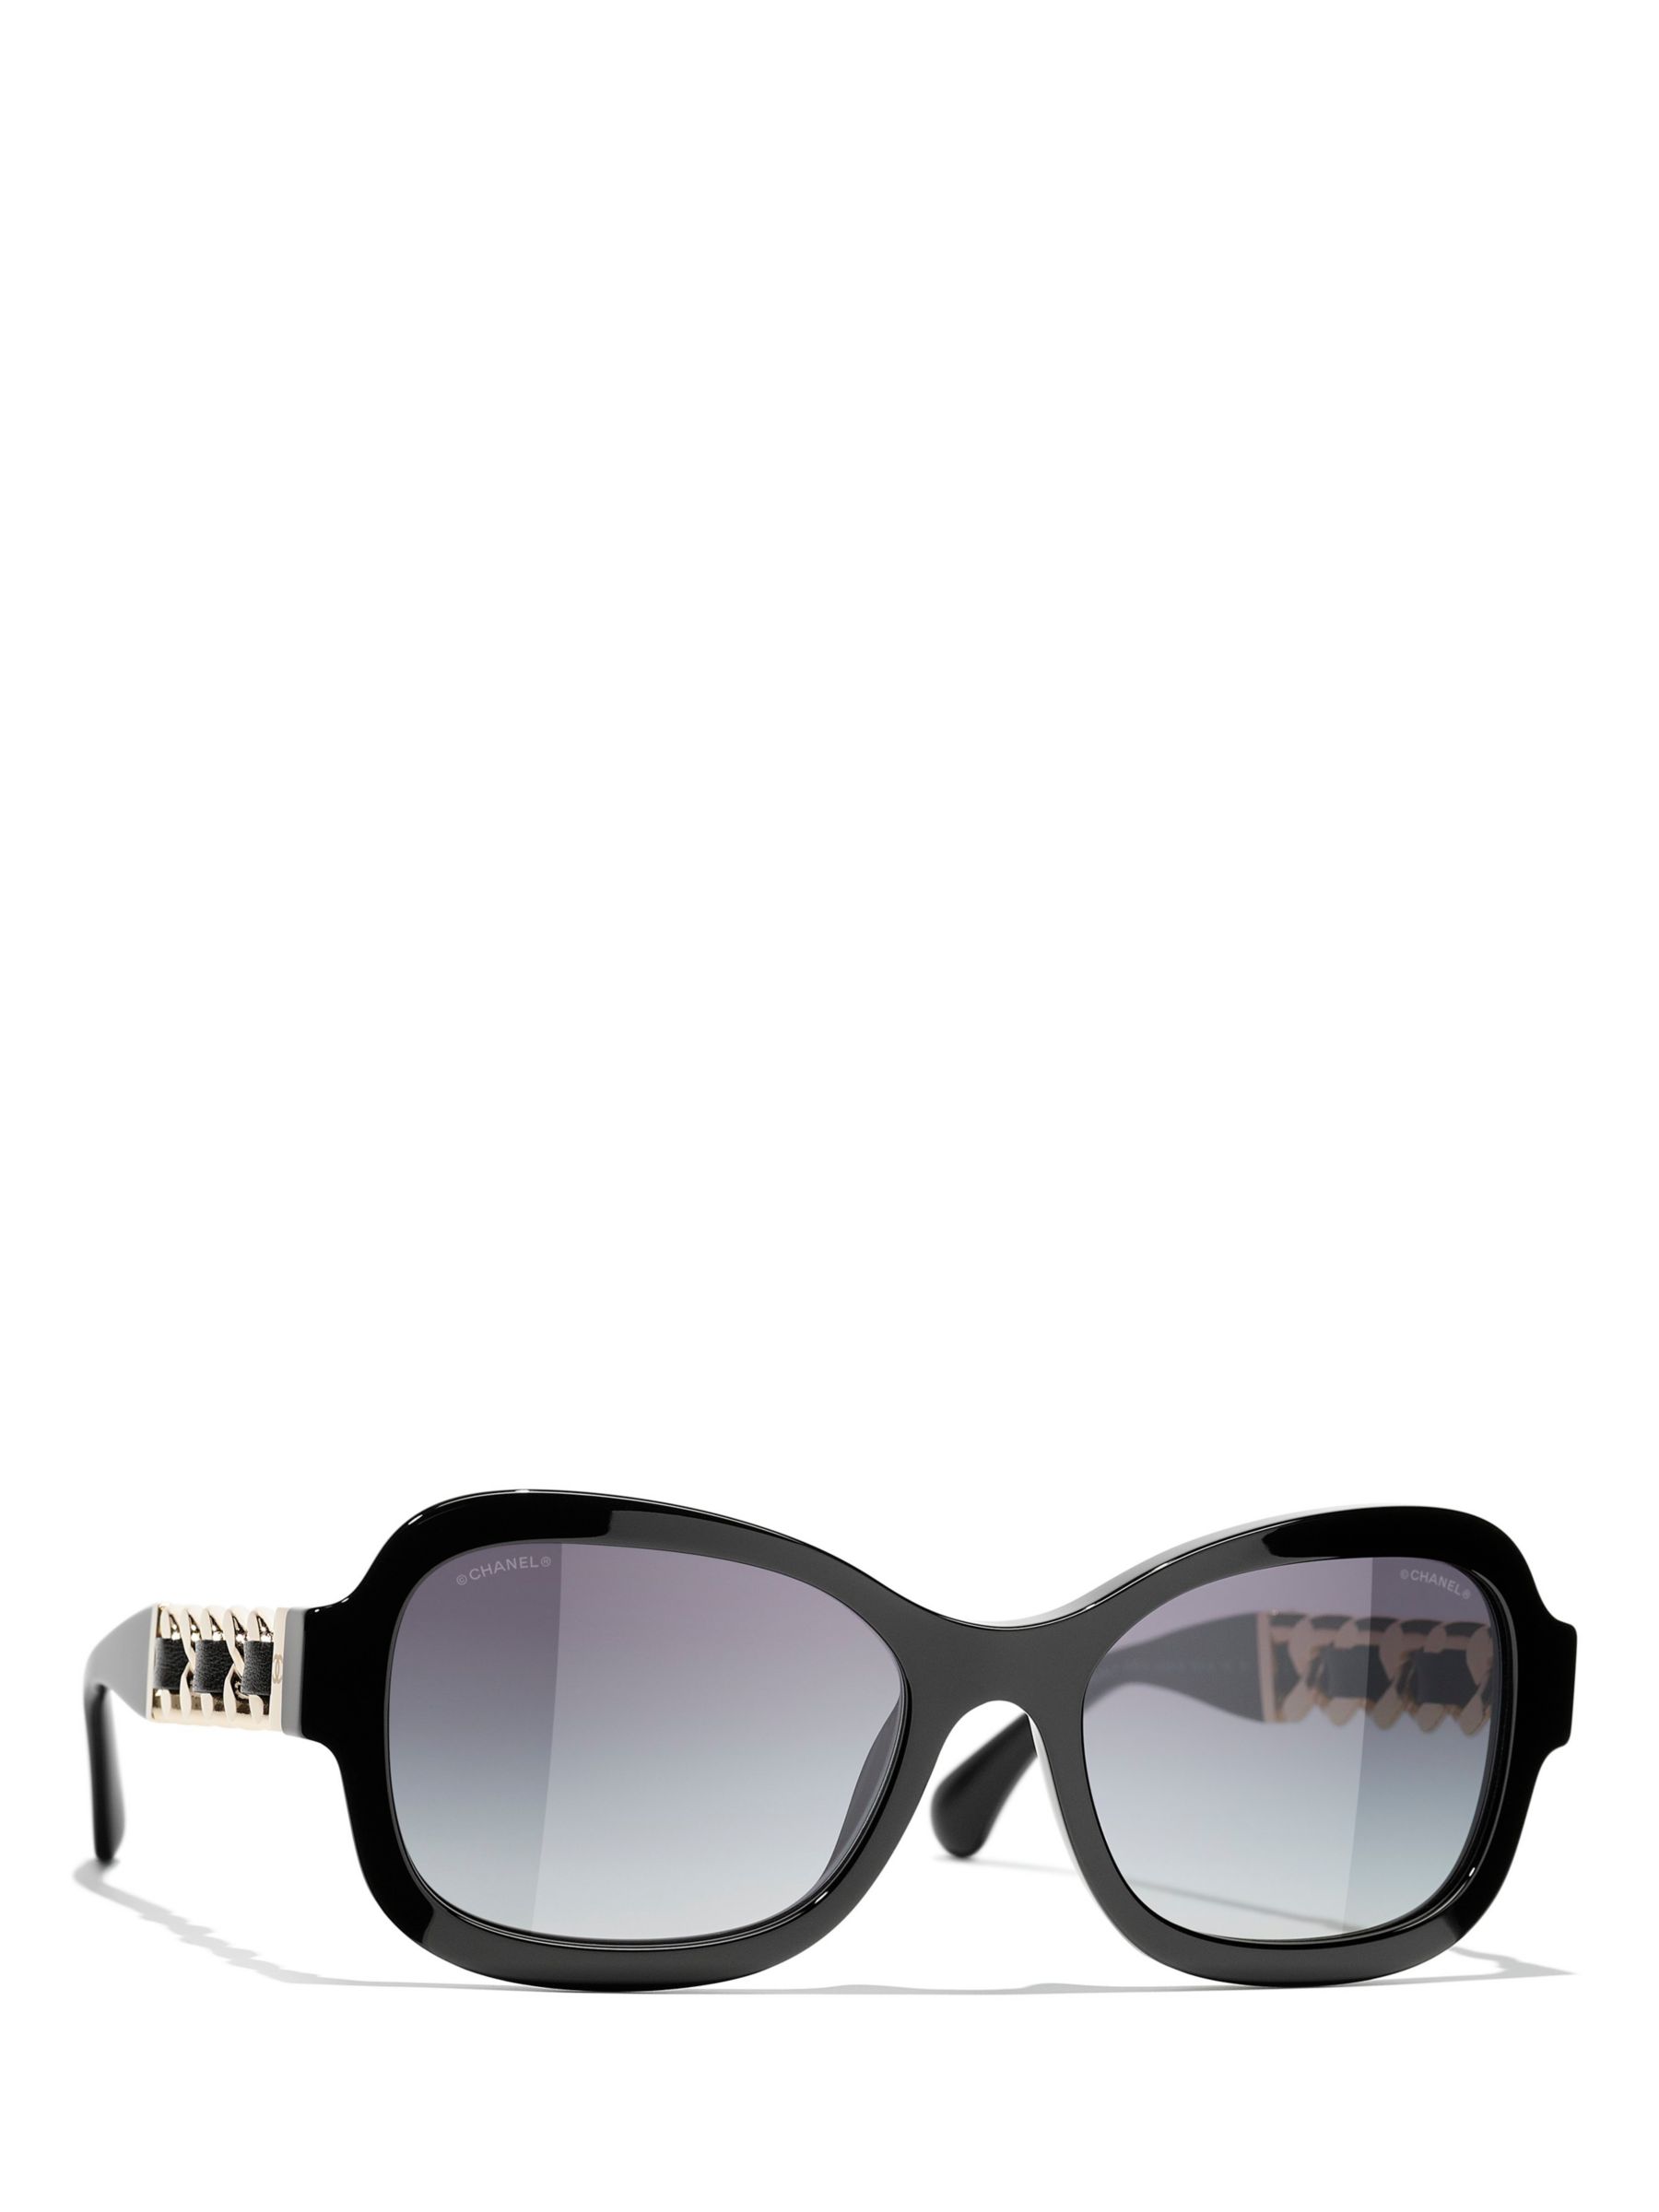 Chanel Square Sunglasses CH5479A 56 Blue & Blue Sunglasses